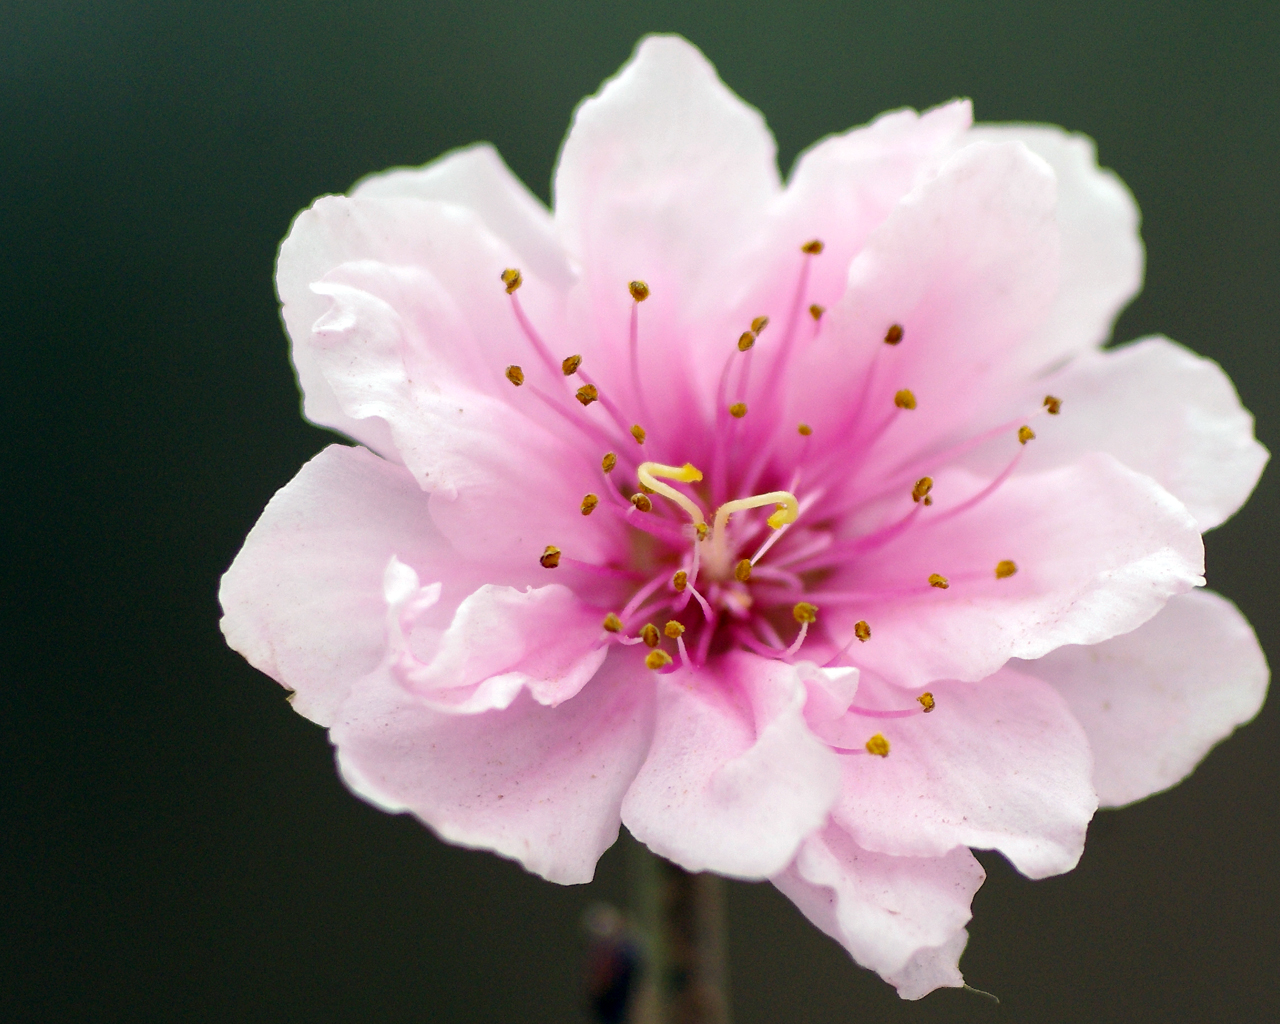 Đào tết là loại hoa được ưa chuộng nhất trong Tết Nguyên đán tại Việt Nam. Đầy màu sắc và ý nghĩa, hoa đào tạo nên một phong cách tinh tế và sang trọng trong không gian tết. Hãy xem hình ảnh để cảm nhận thêm vẻ đẹp của những bông hoa đào đang nở rộ trong không gian tết đầy ấm áp.